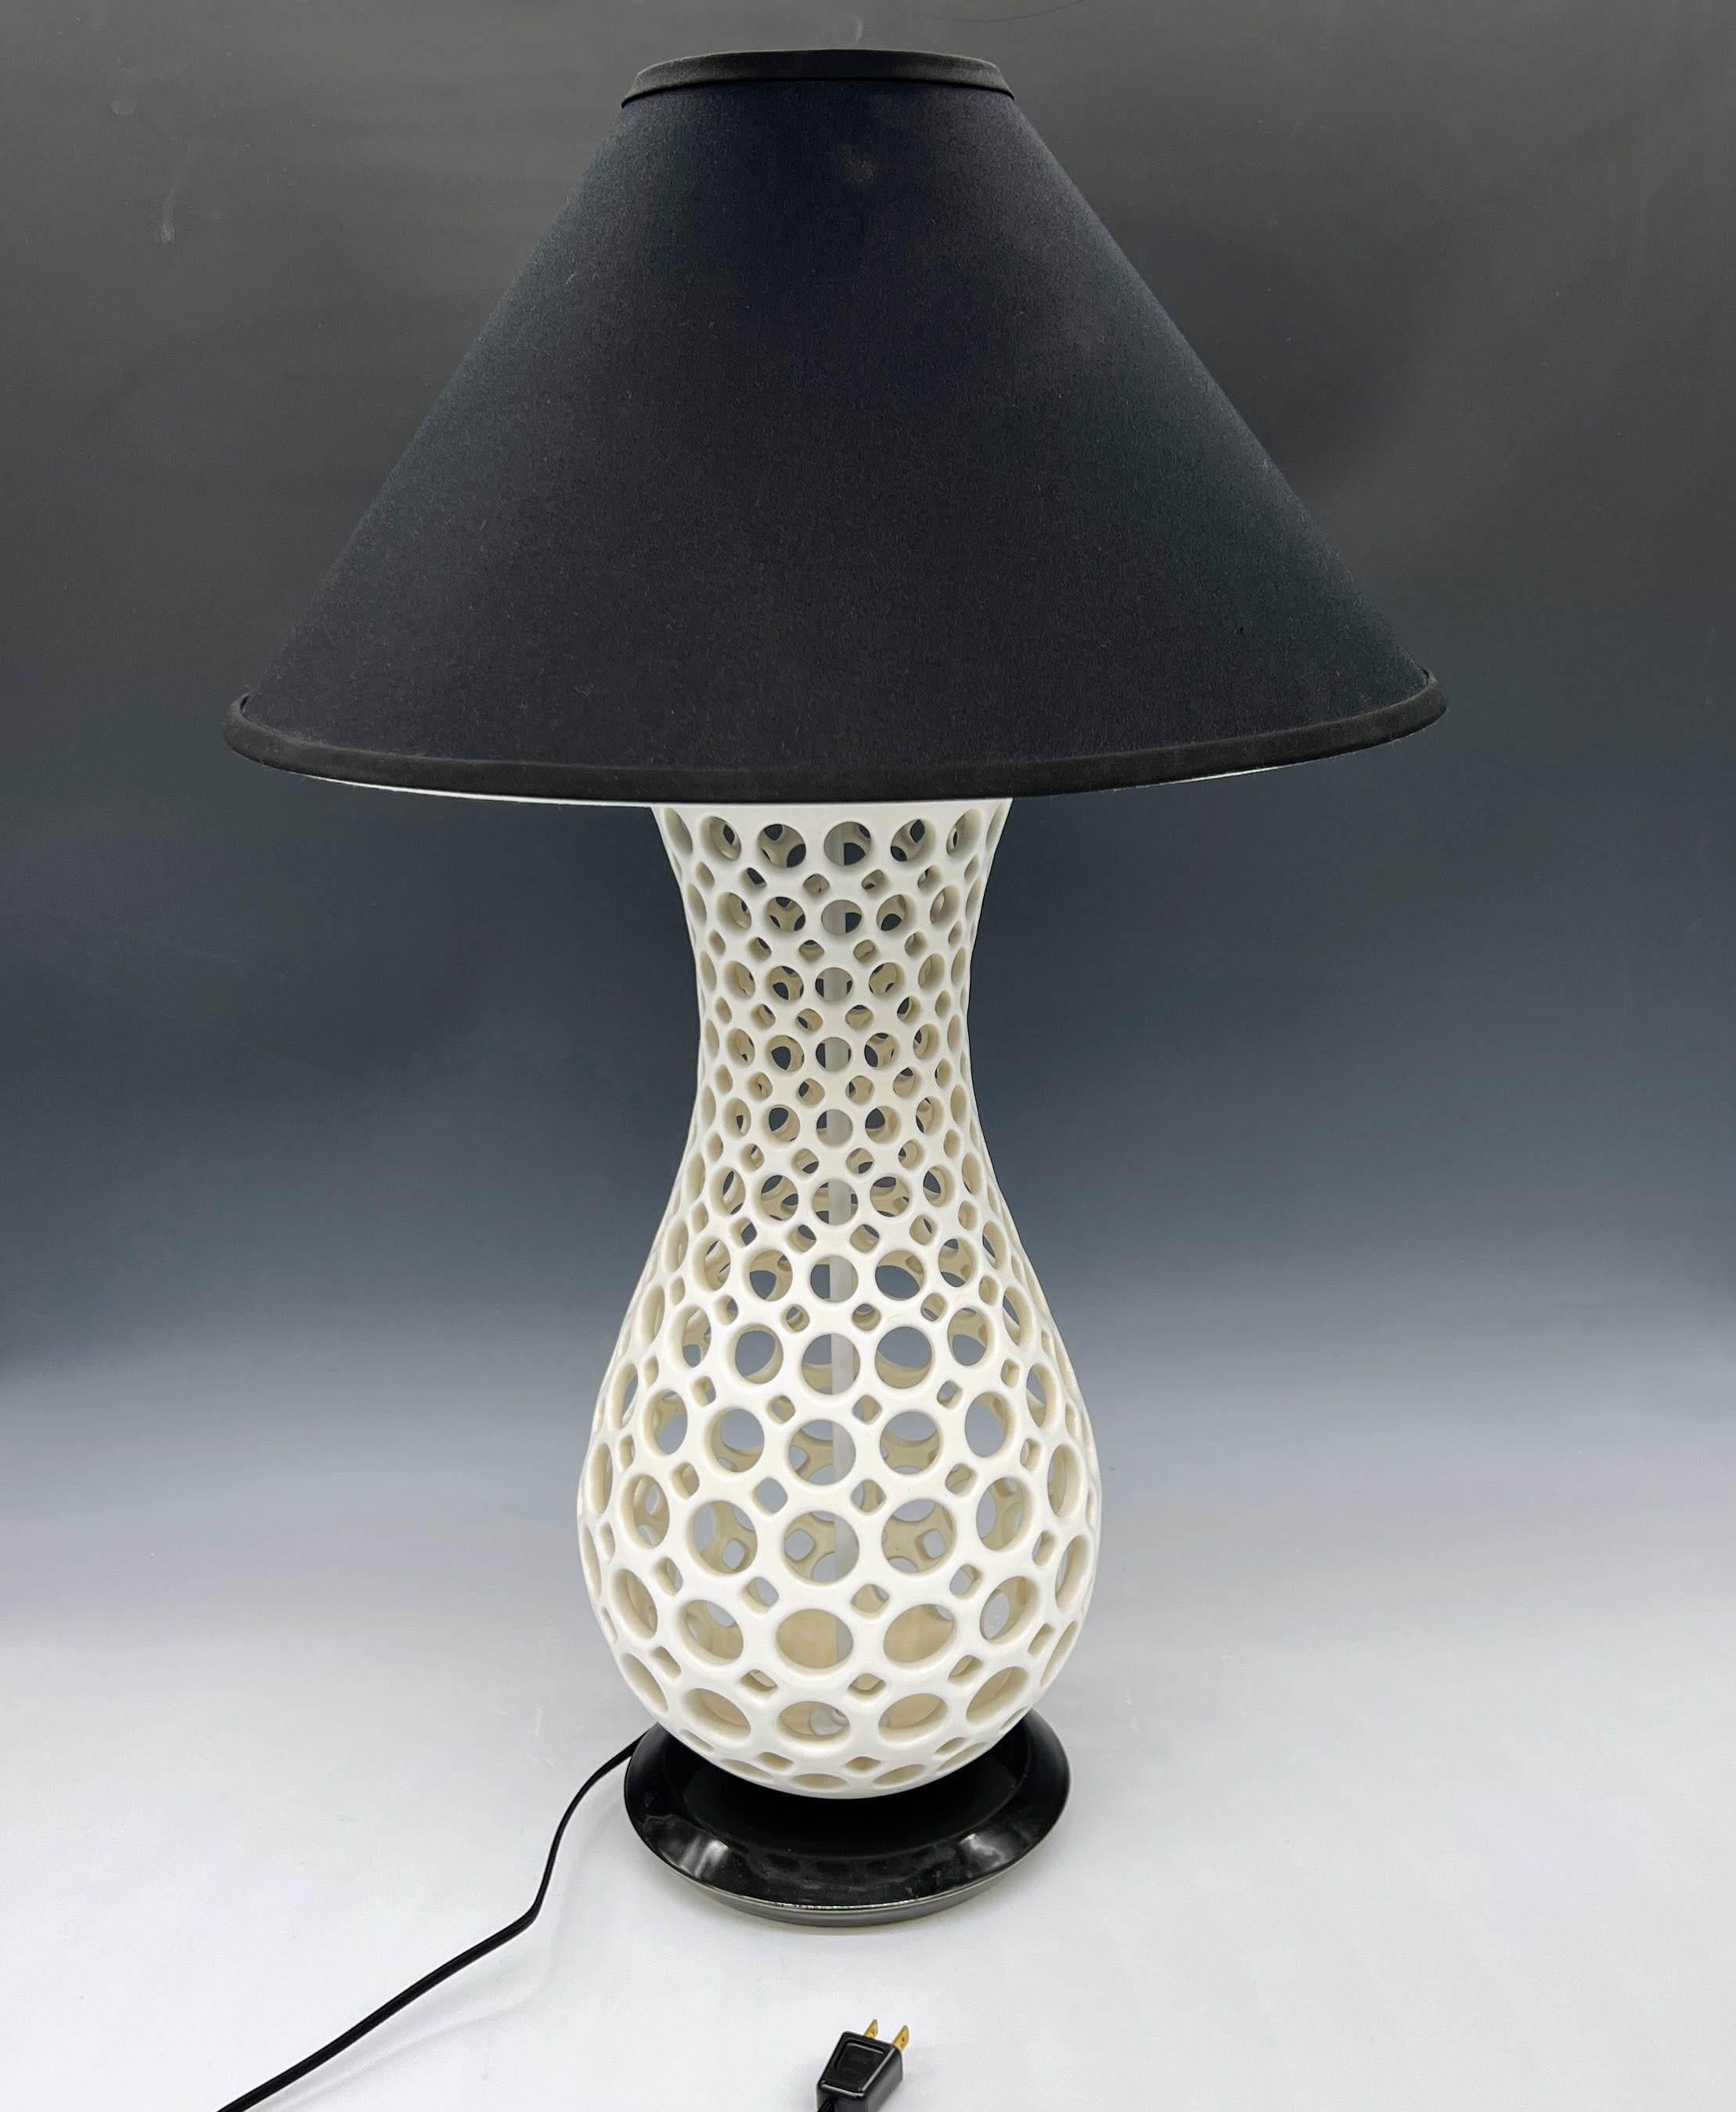 Diese Lampe wurde auf der Drehscheibe gedreht und von Hand mit einer weißen, satinierten Glasur durchbohrt.
Der Sockel ist aus radgedrehter Keramik mit glasig schwarzer Glasur
Schwarzes Kabel und Schalter.
Kann mit jeder Glühbirne verwendet werden.